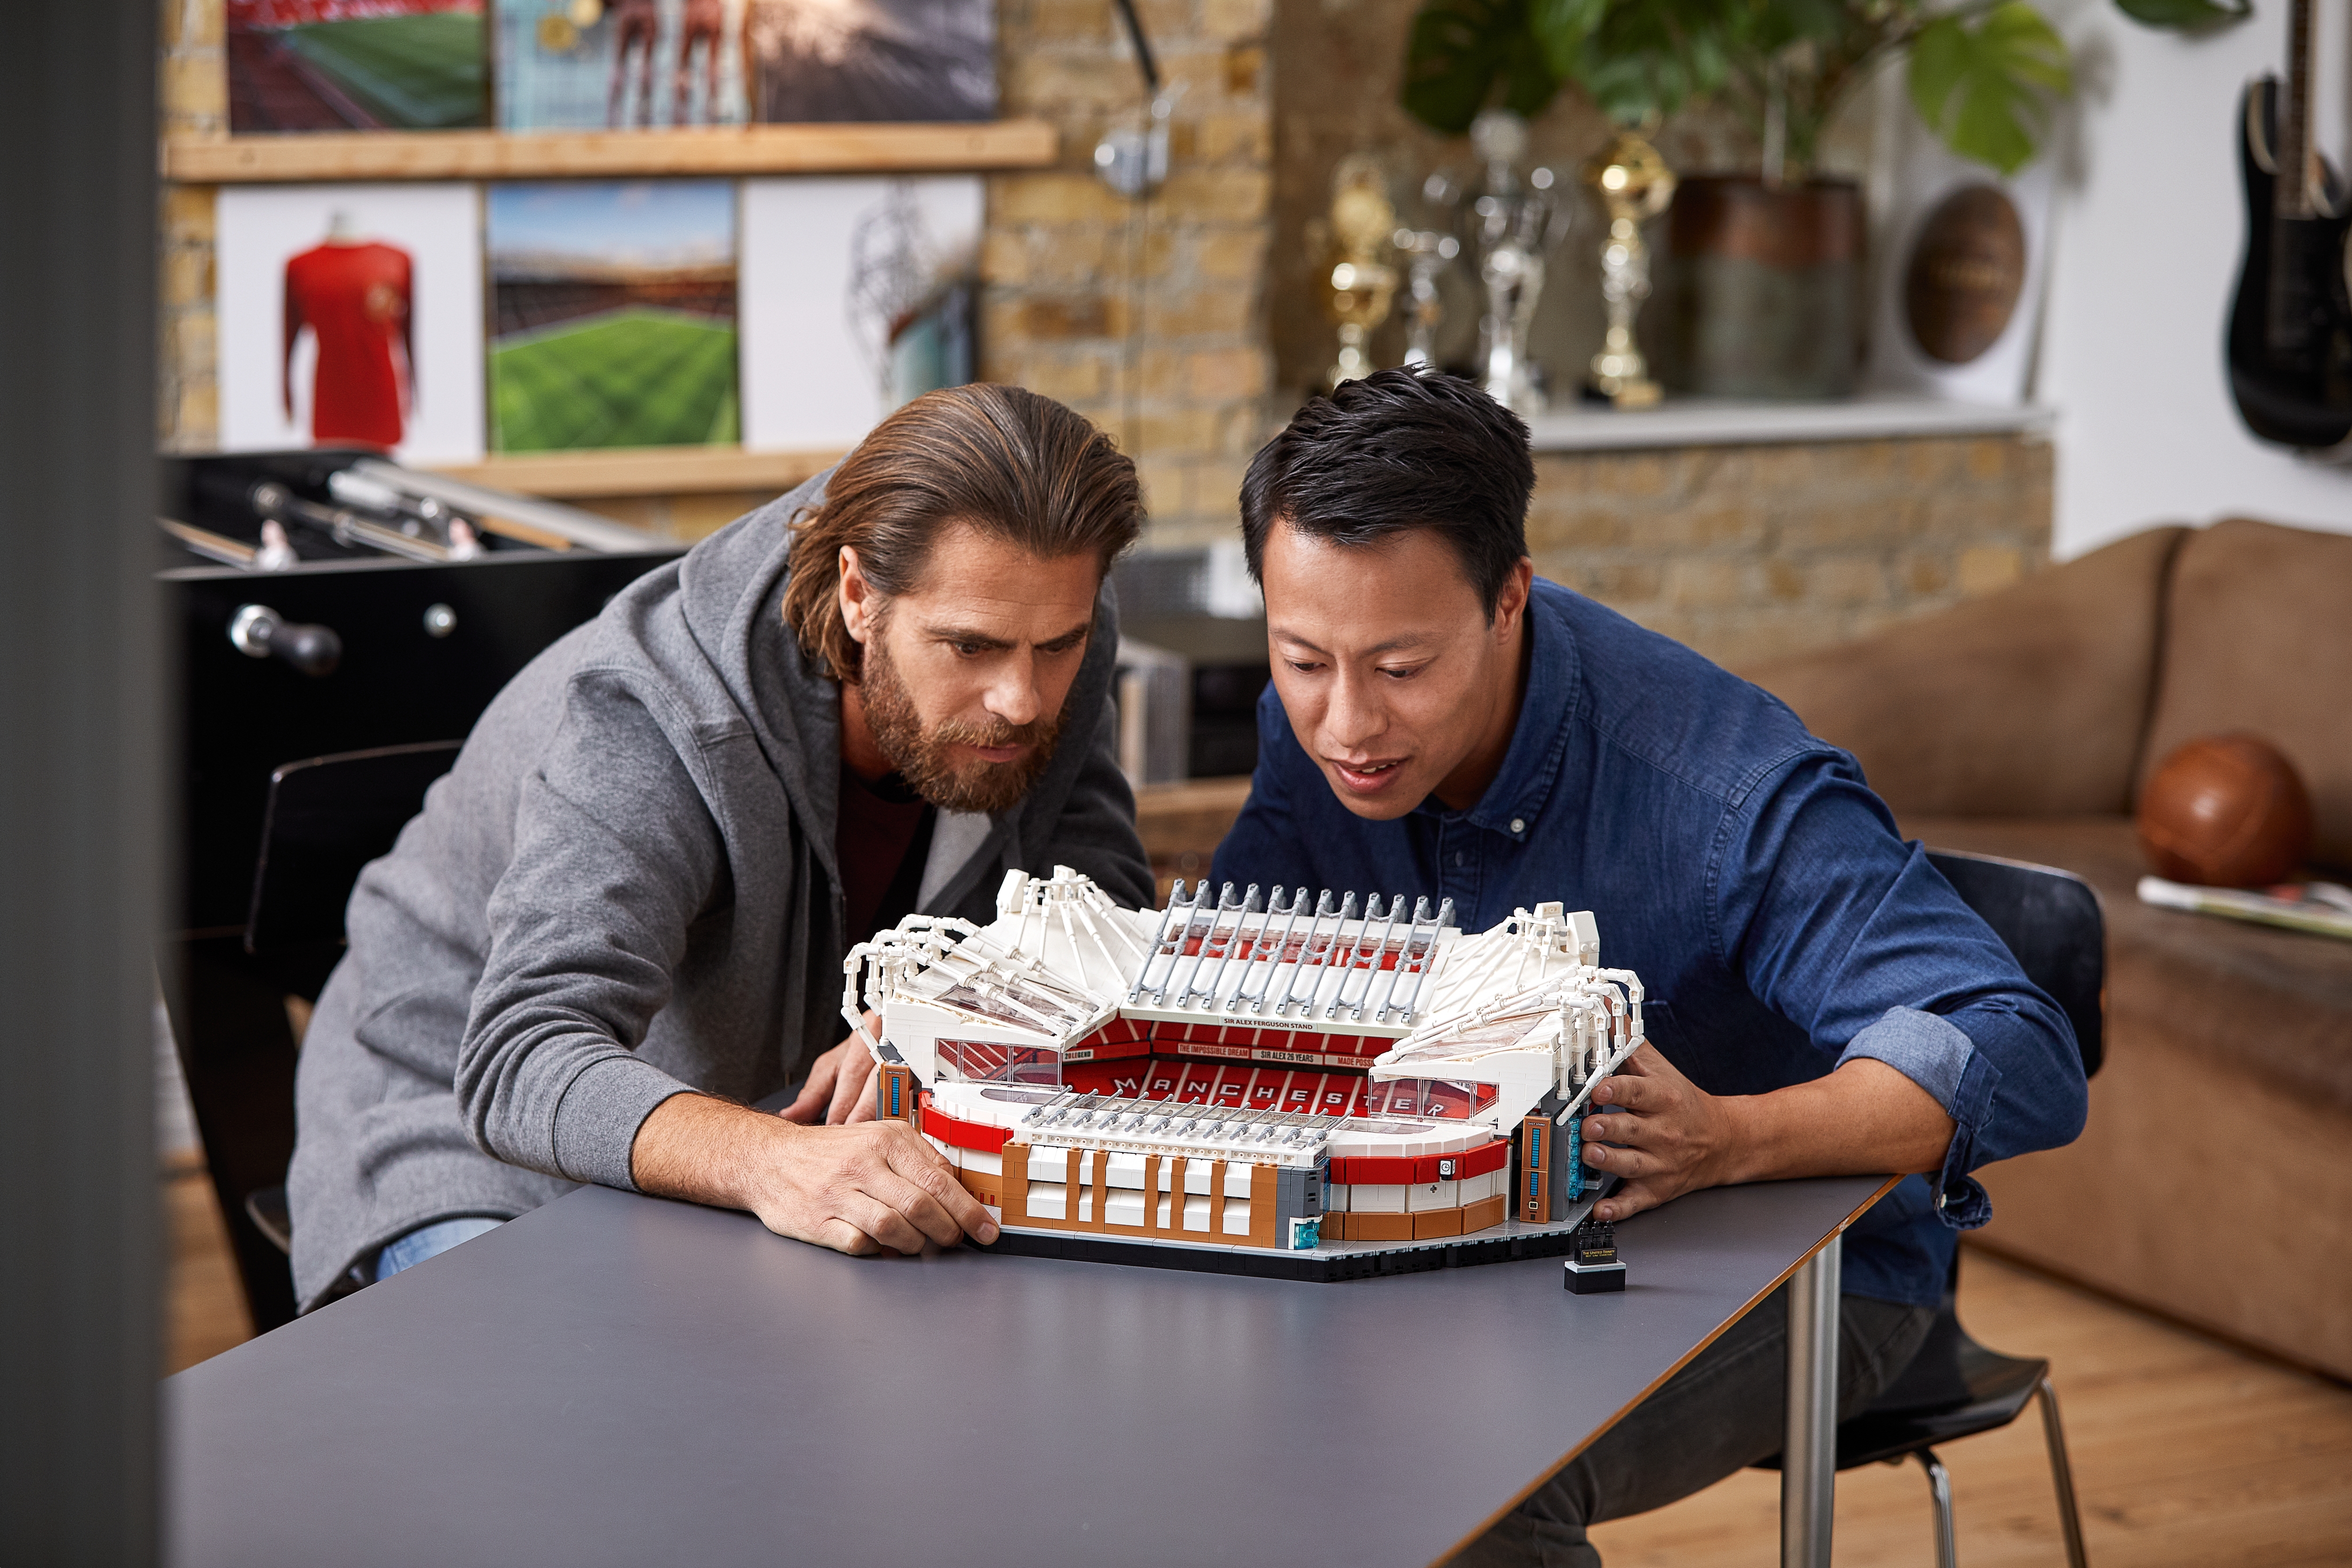 LEGO dévoile une réplique en 3898 pièces du stade Old Trafford